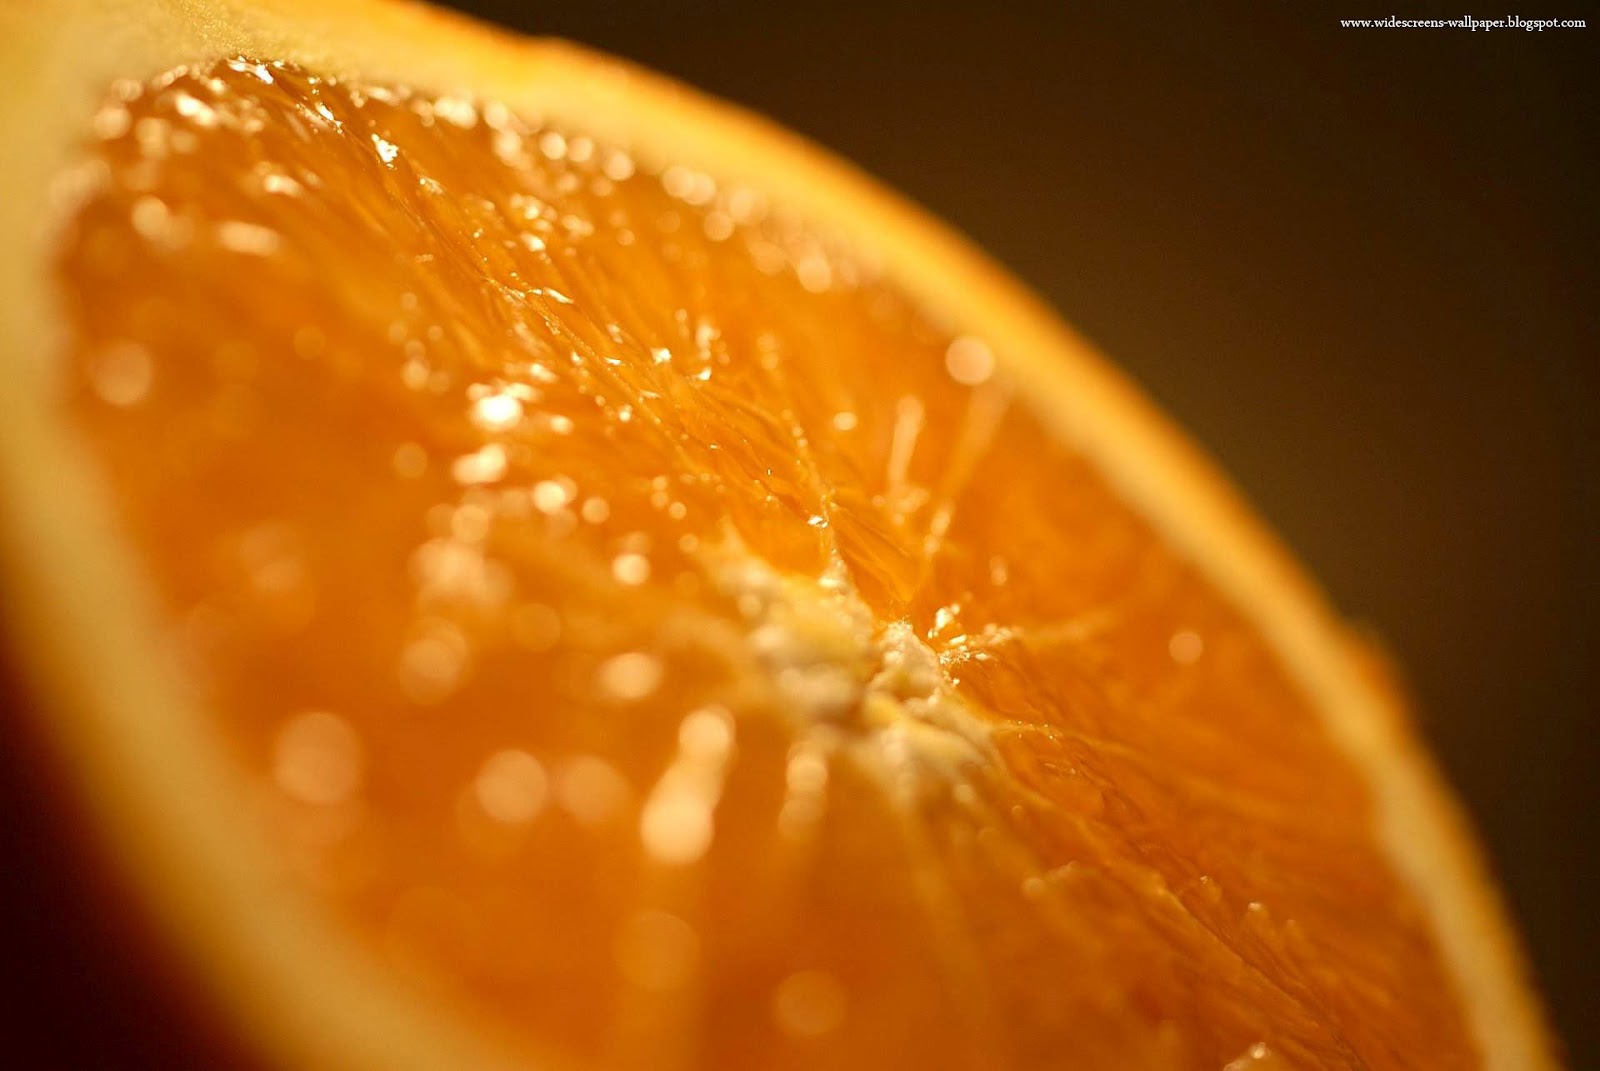 fond d'écran d'agrumes,orange,clémentine,agrumes,mandarine,macro photographie